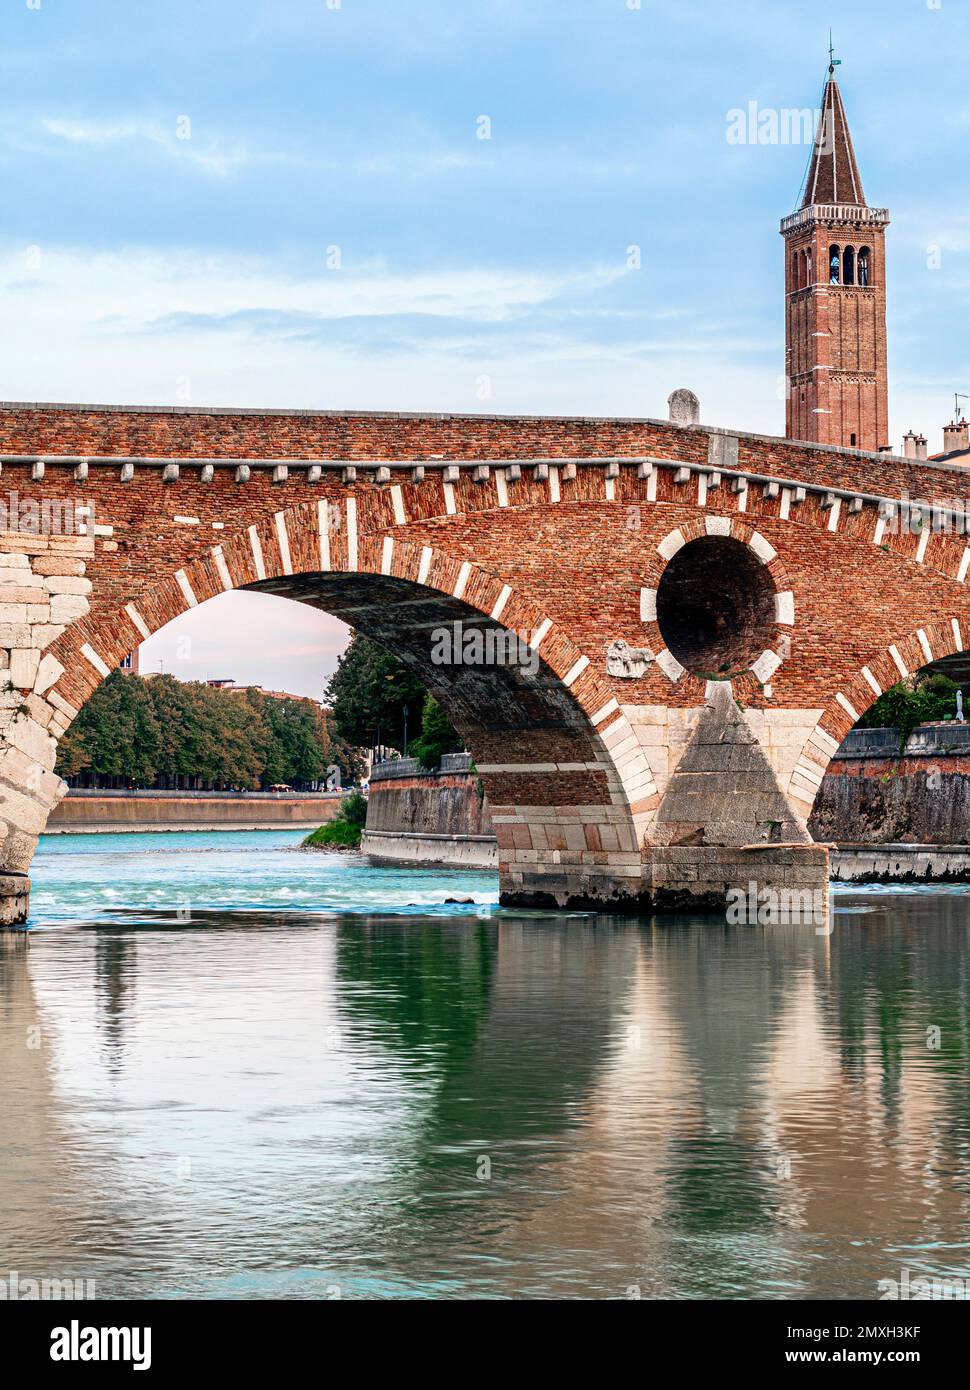 Ponte in pietra Verona - ponte ad arco romano. Immagine verticale. Foto Stock